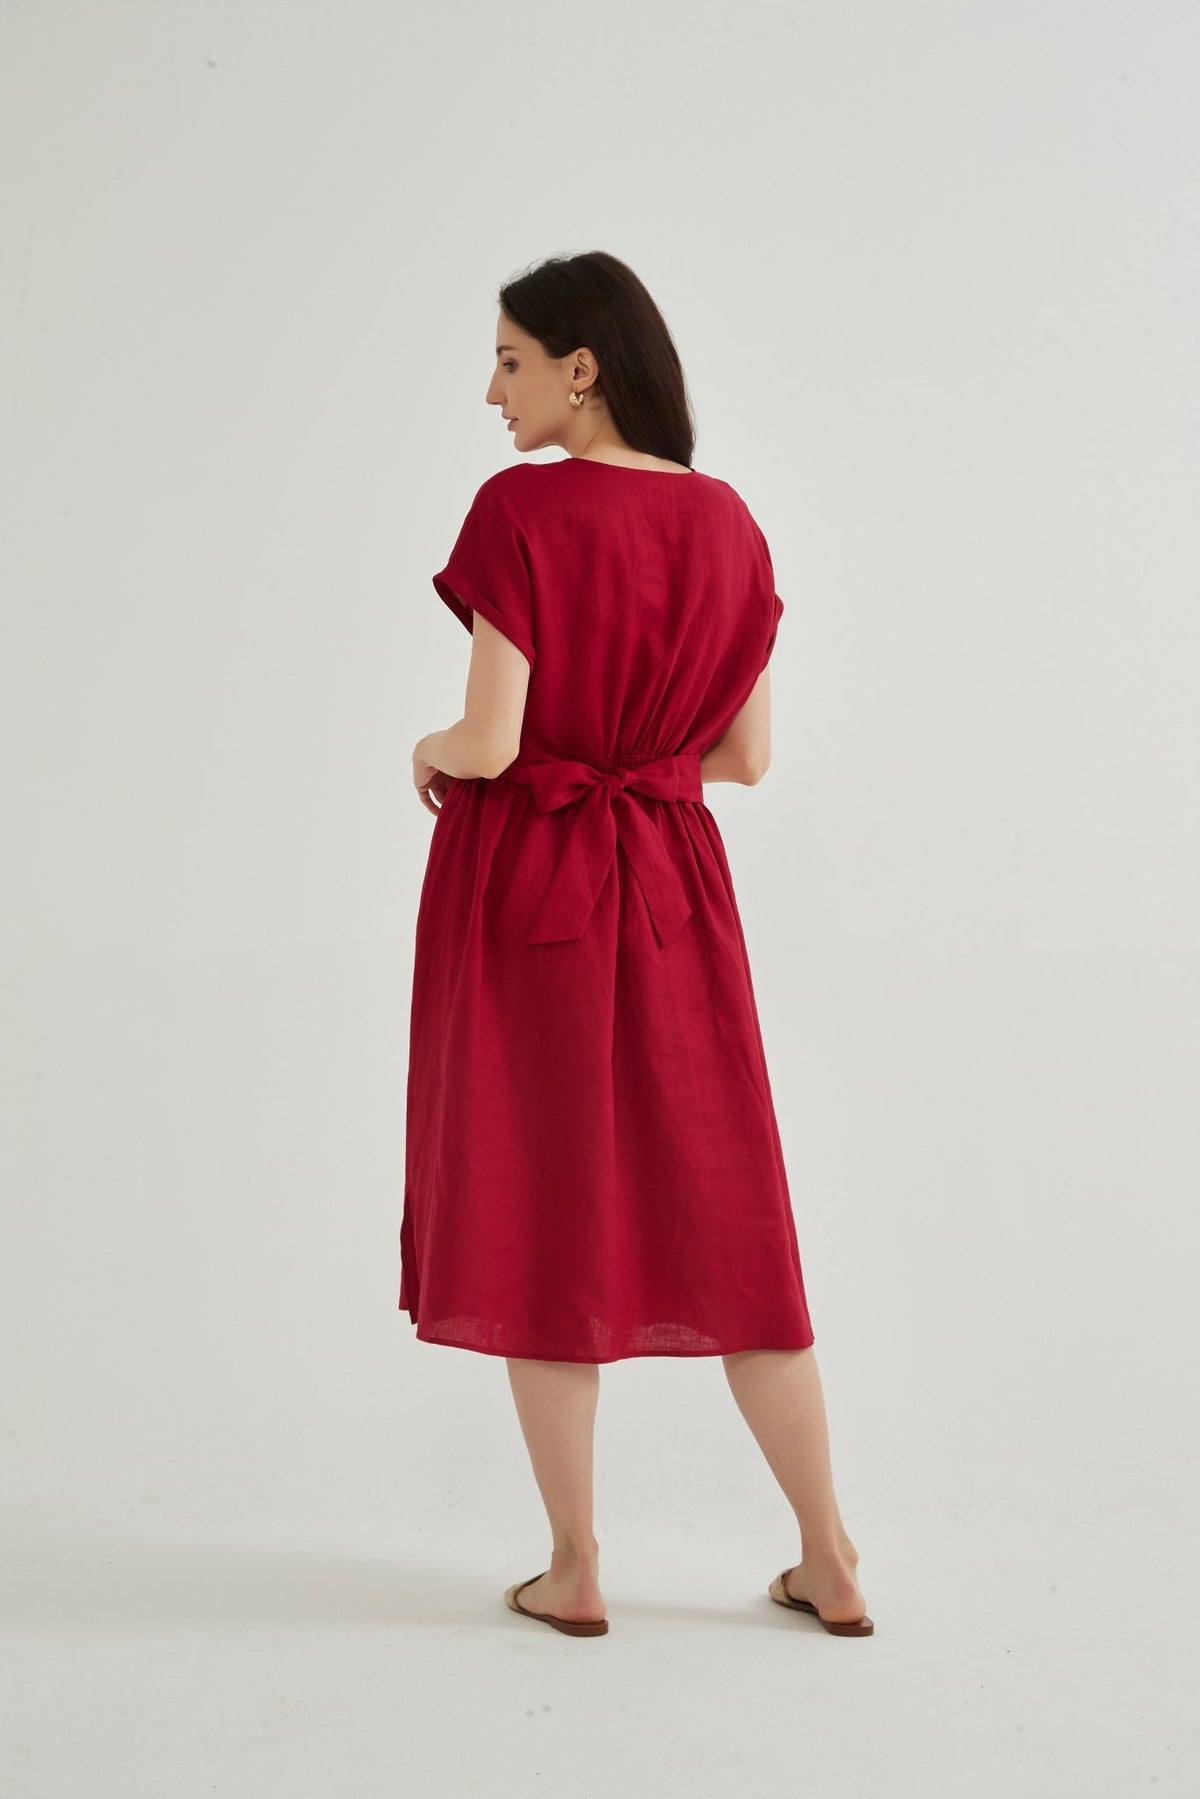 Pre-Order Scarlett Cap Sleeve 100% Linen Dress - Whisper Mint